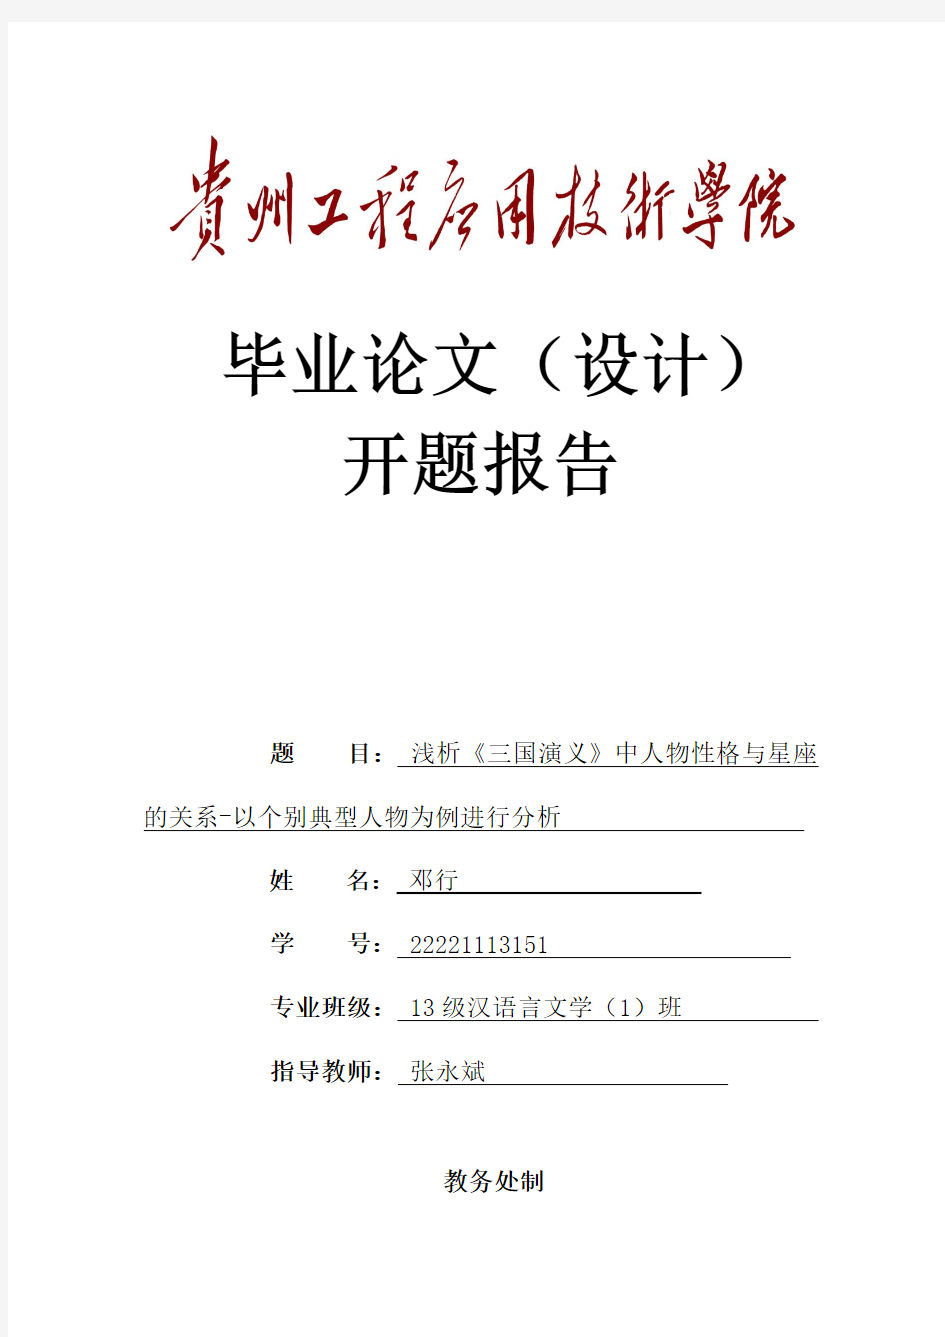 贵州工程应用技术学院毕业论文(设计)开题报告(一式一份)